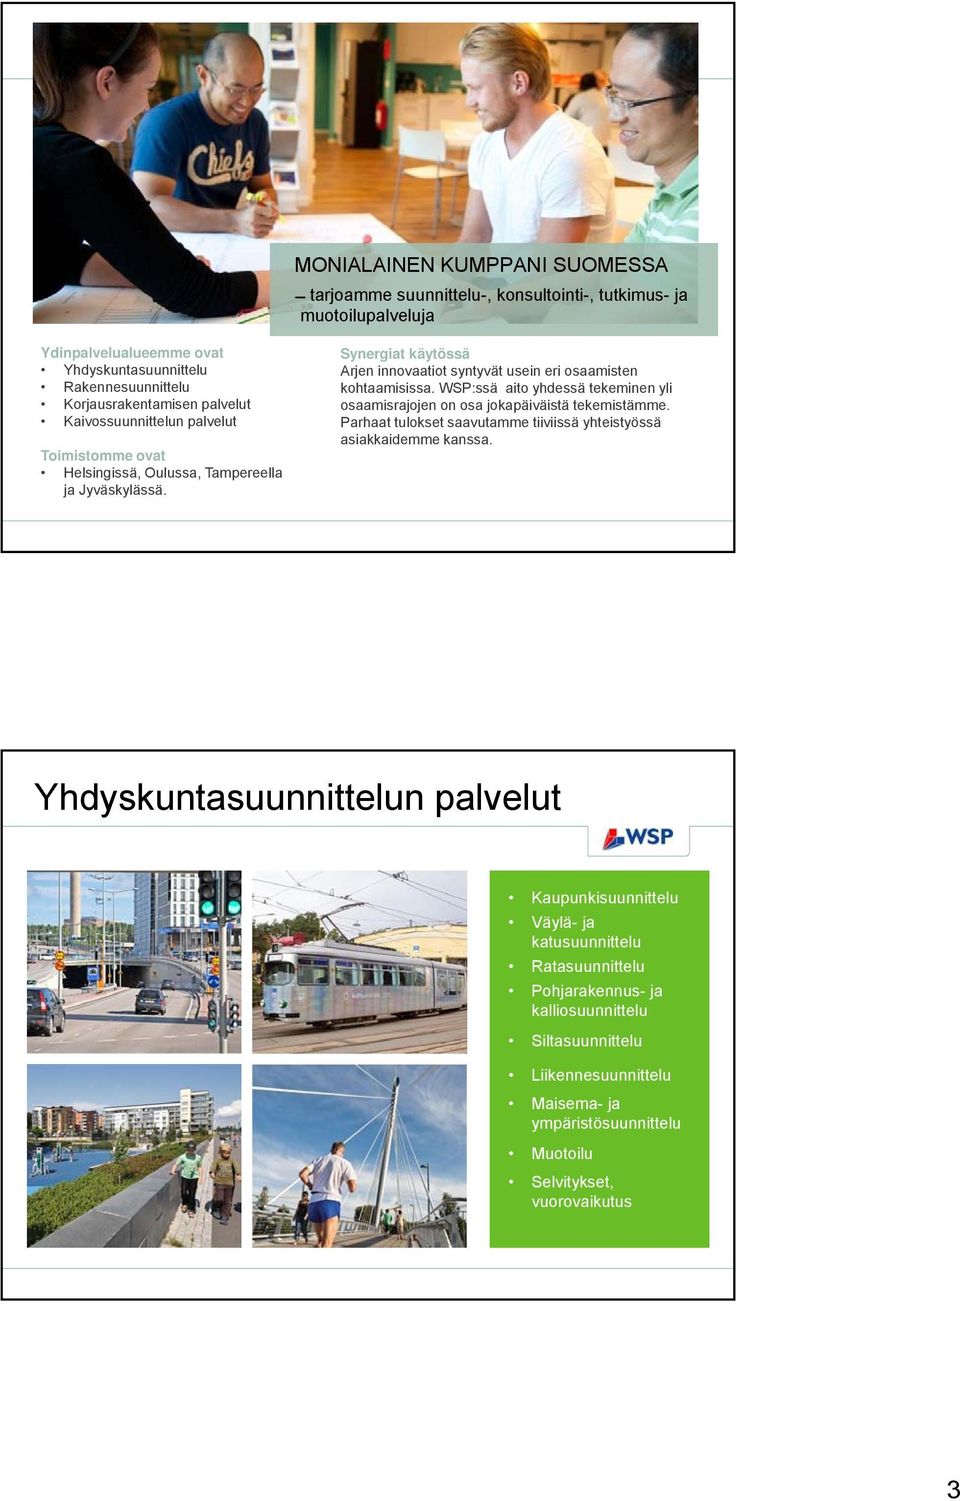 projekteja Kaivossuunnittelun palvelut Parhaat tulokset saavutamme tiiviissä yhteistyössä eri puolilla asiakkaidemme kanssa. Toimistomme ovat maata Helsingissä, Oulussa, Tampereella ja Jyväskylässä.